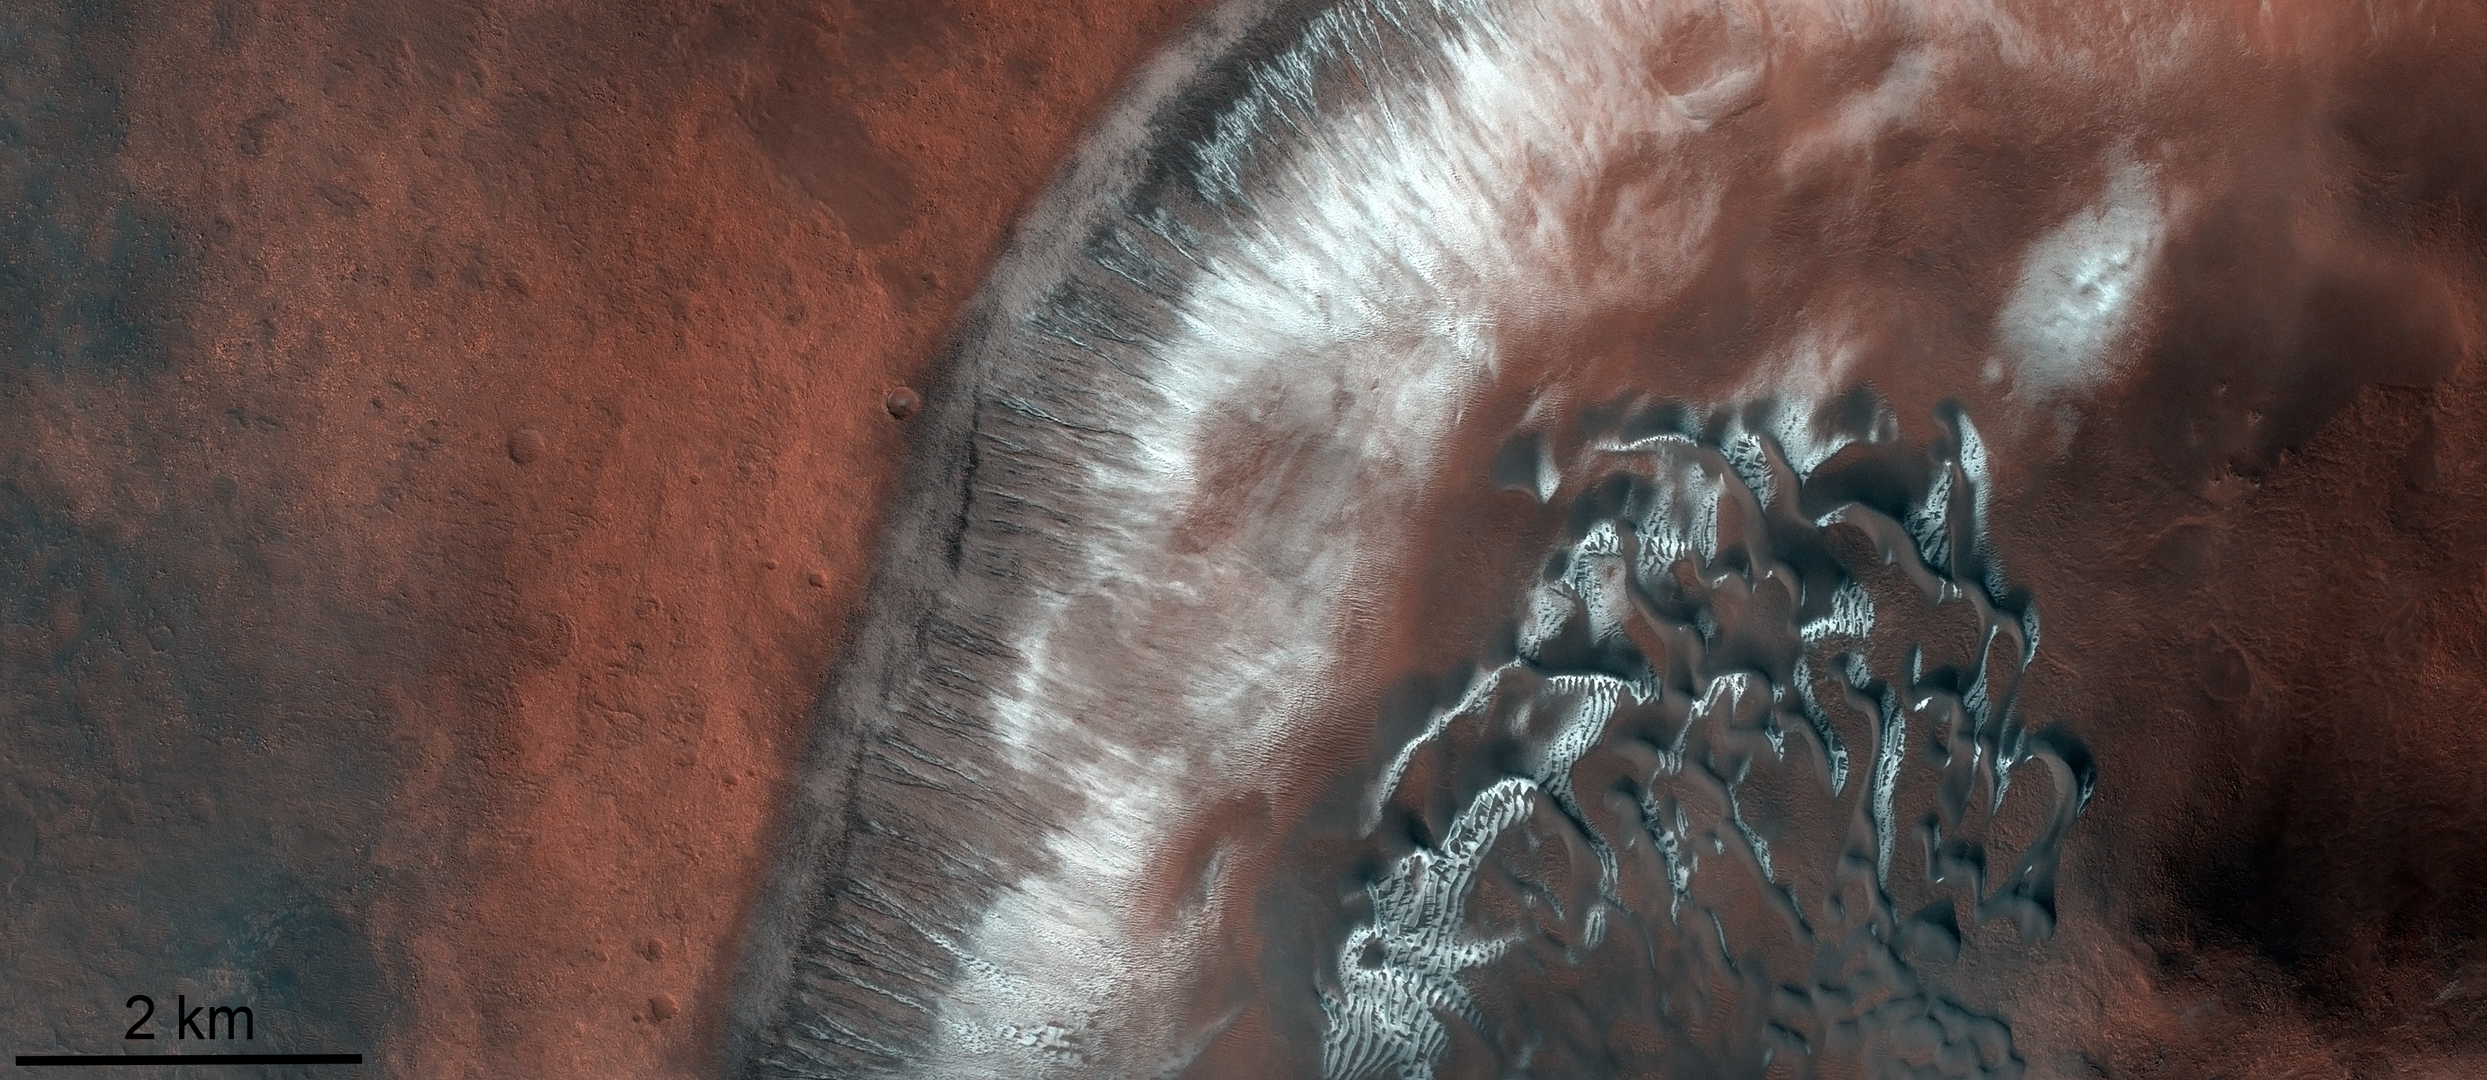 Campos de dunas en el cráter Green de Marte